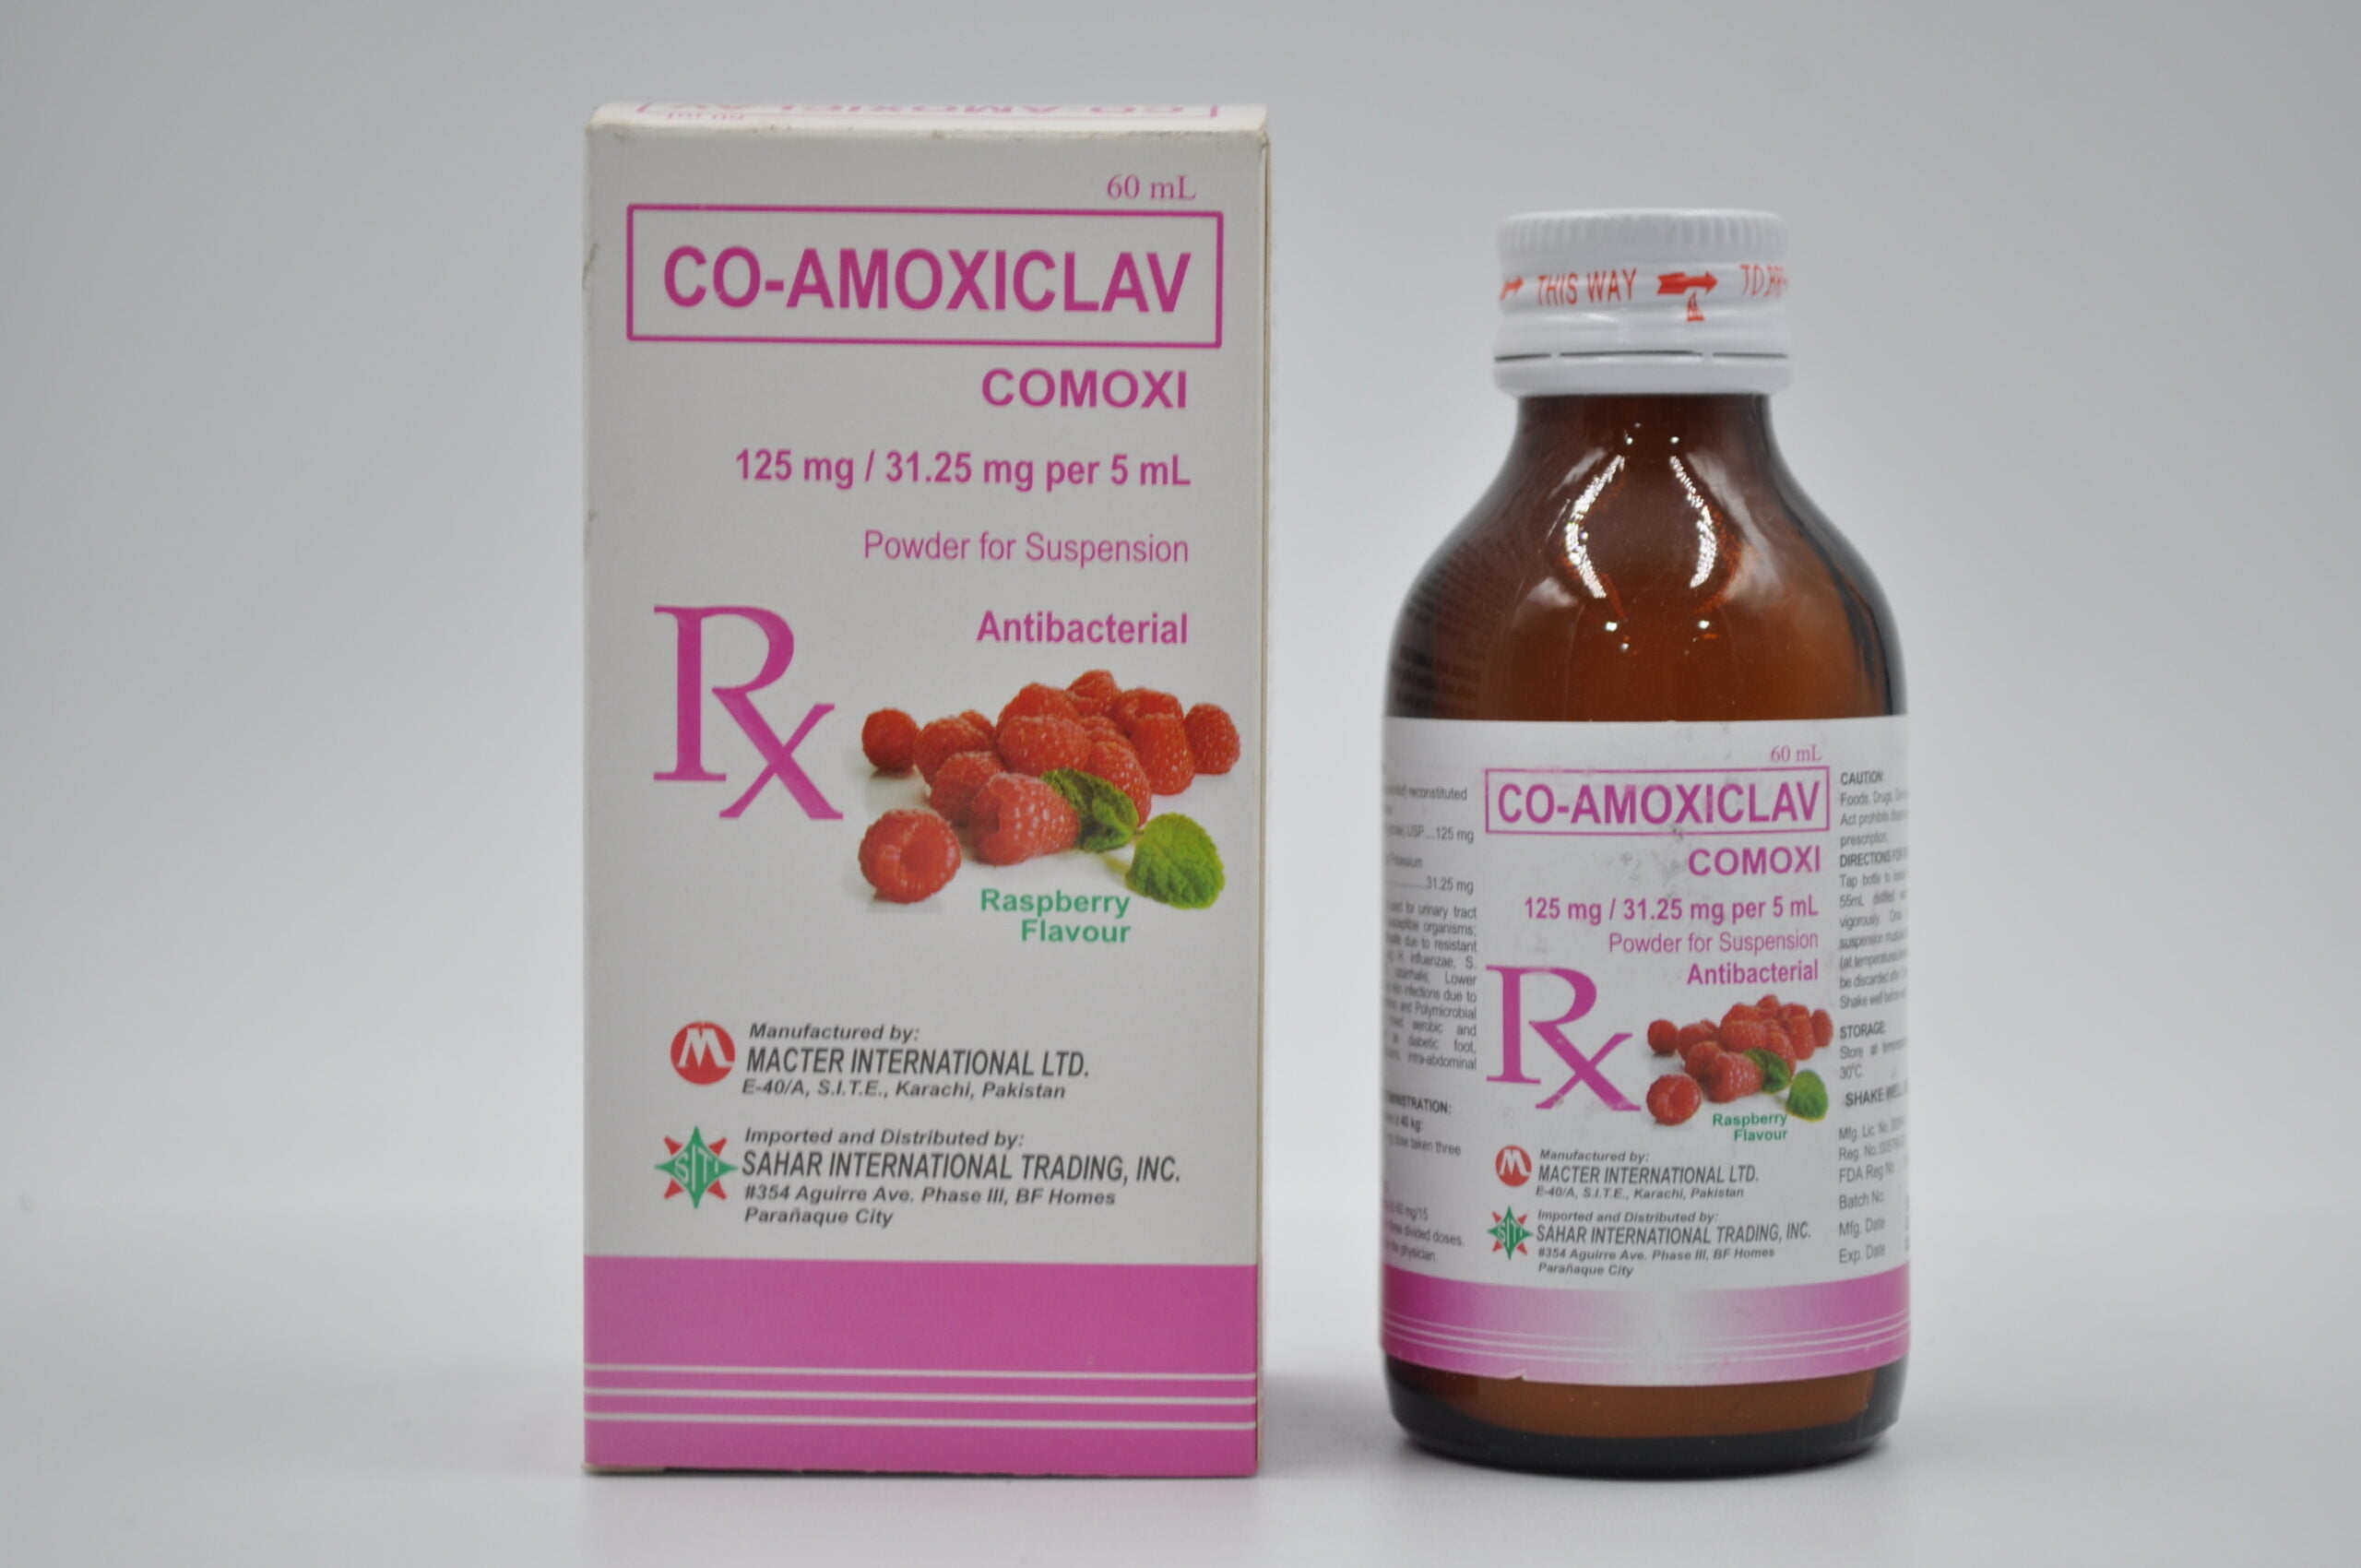 CO-AMOXICLAV (COMOXI) 125 mg/31.25 mg